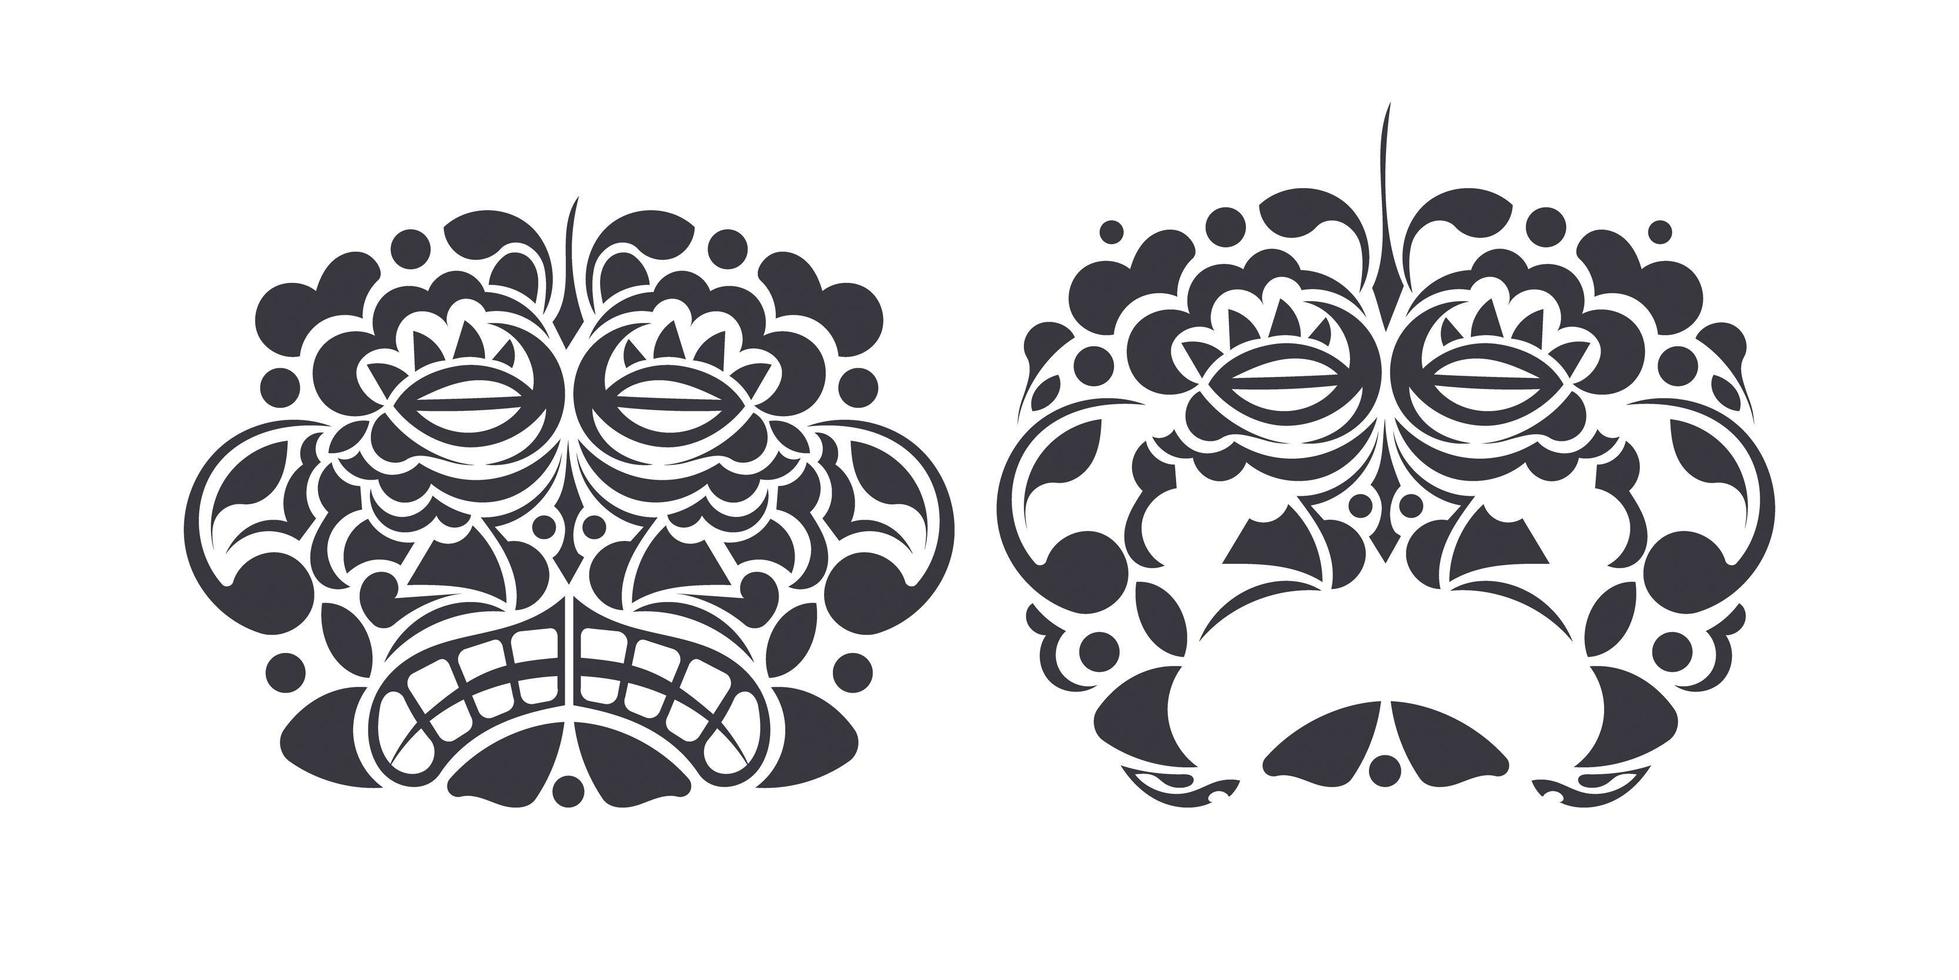 impostare la silhouette della maschera tiki polinesiana isolata su sfondo bianco. maschera tribale hawaiana. stile cartone animato vettoriale. vettore